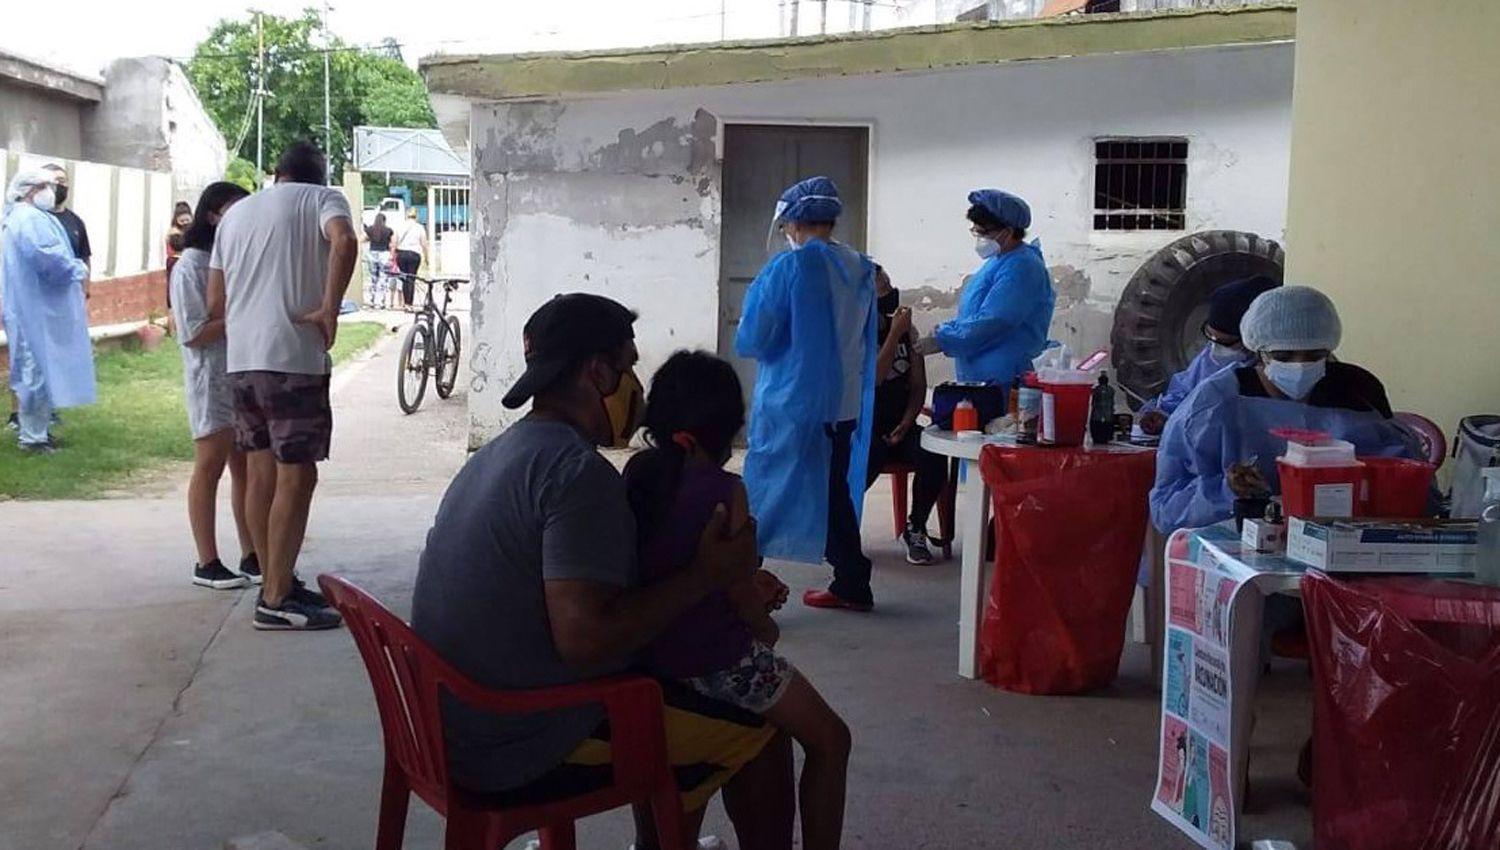 Mantildeana vacunaraacuten a chicos de edad escolar en el barrio Huaico Hondo